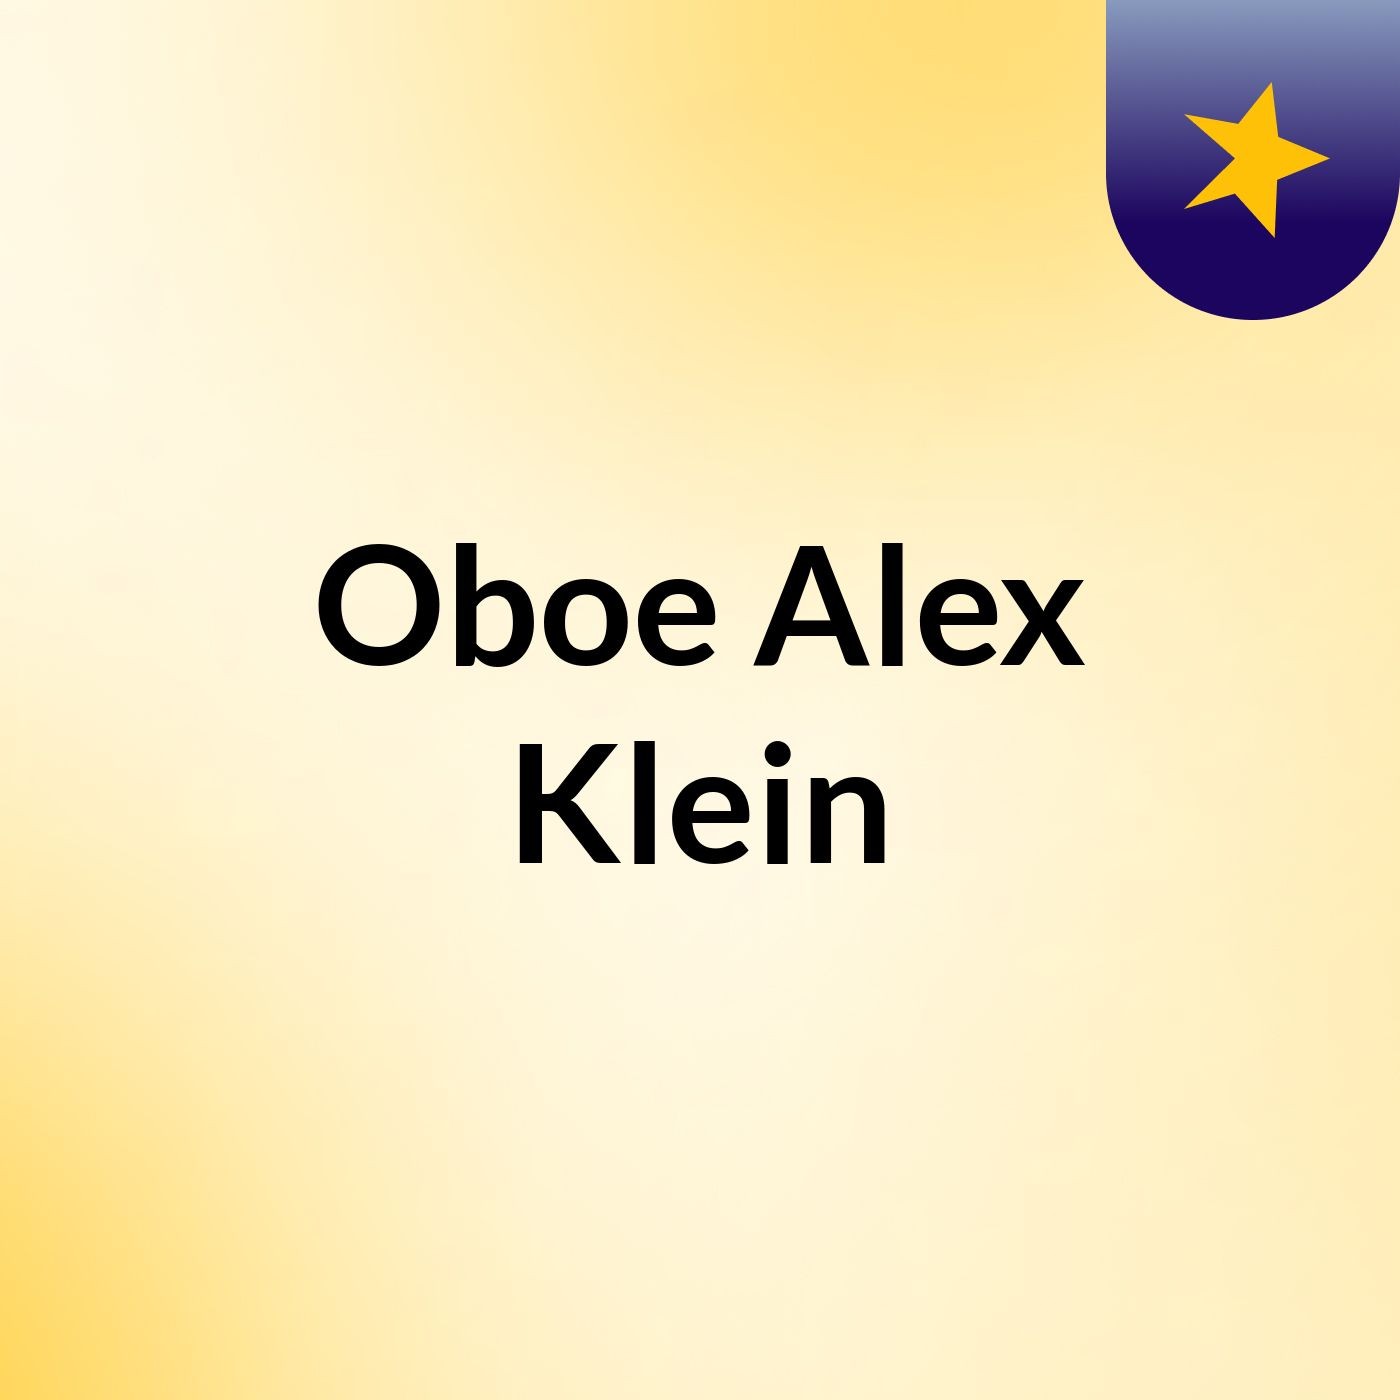 Oboe Alex Klein